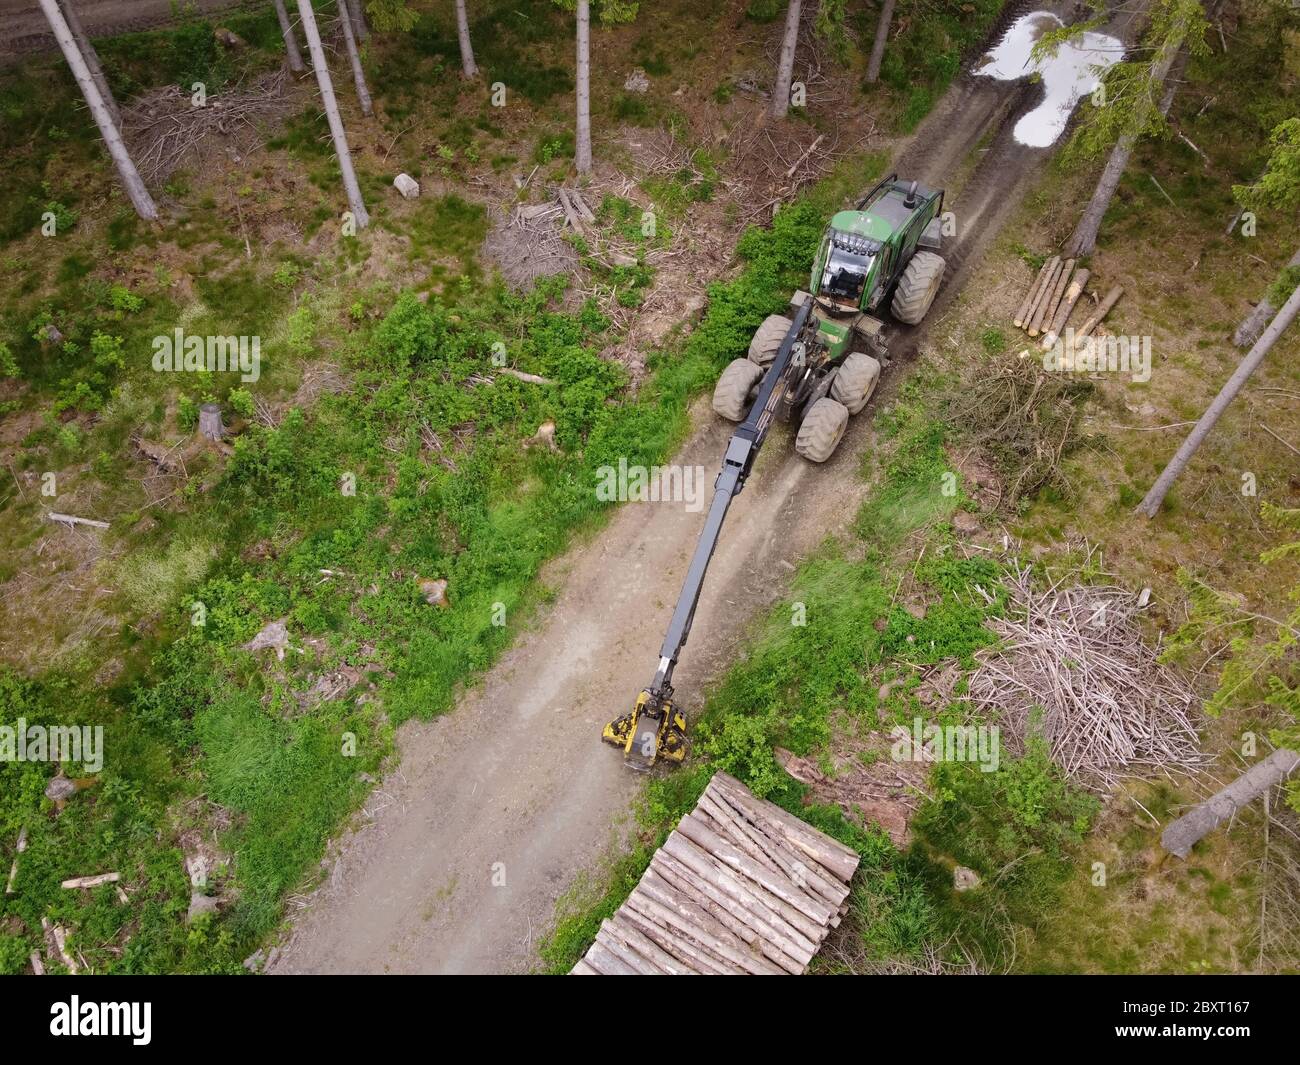 Vue aérienne de drone du tracteur vert timberjack dans la forêt de conifères. Bûcheron, machine forestière pour l'abattage à longueur et l'abattage complet des arbres. Banque D'Images